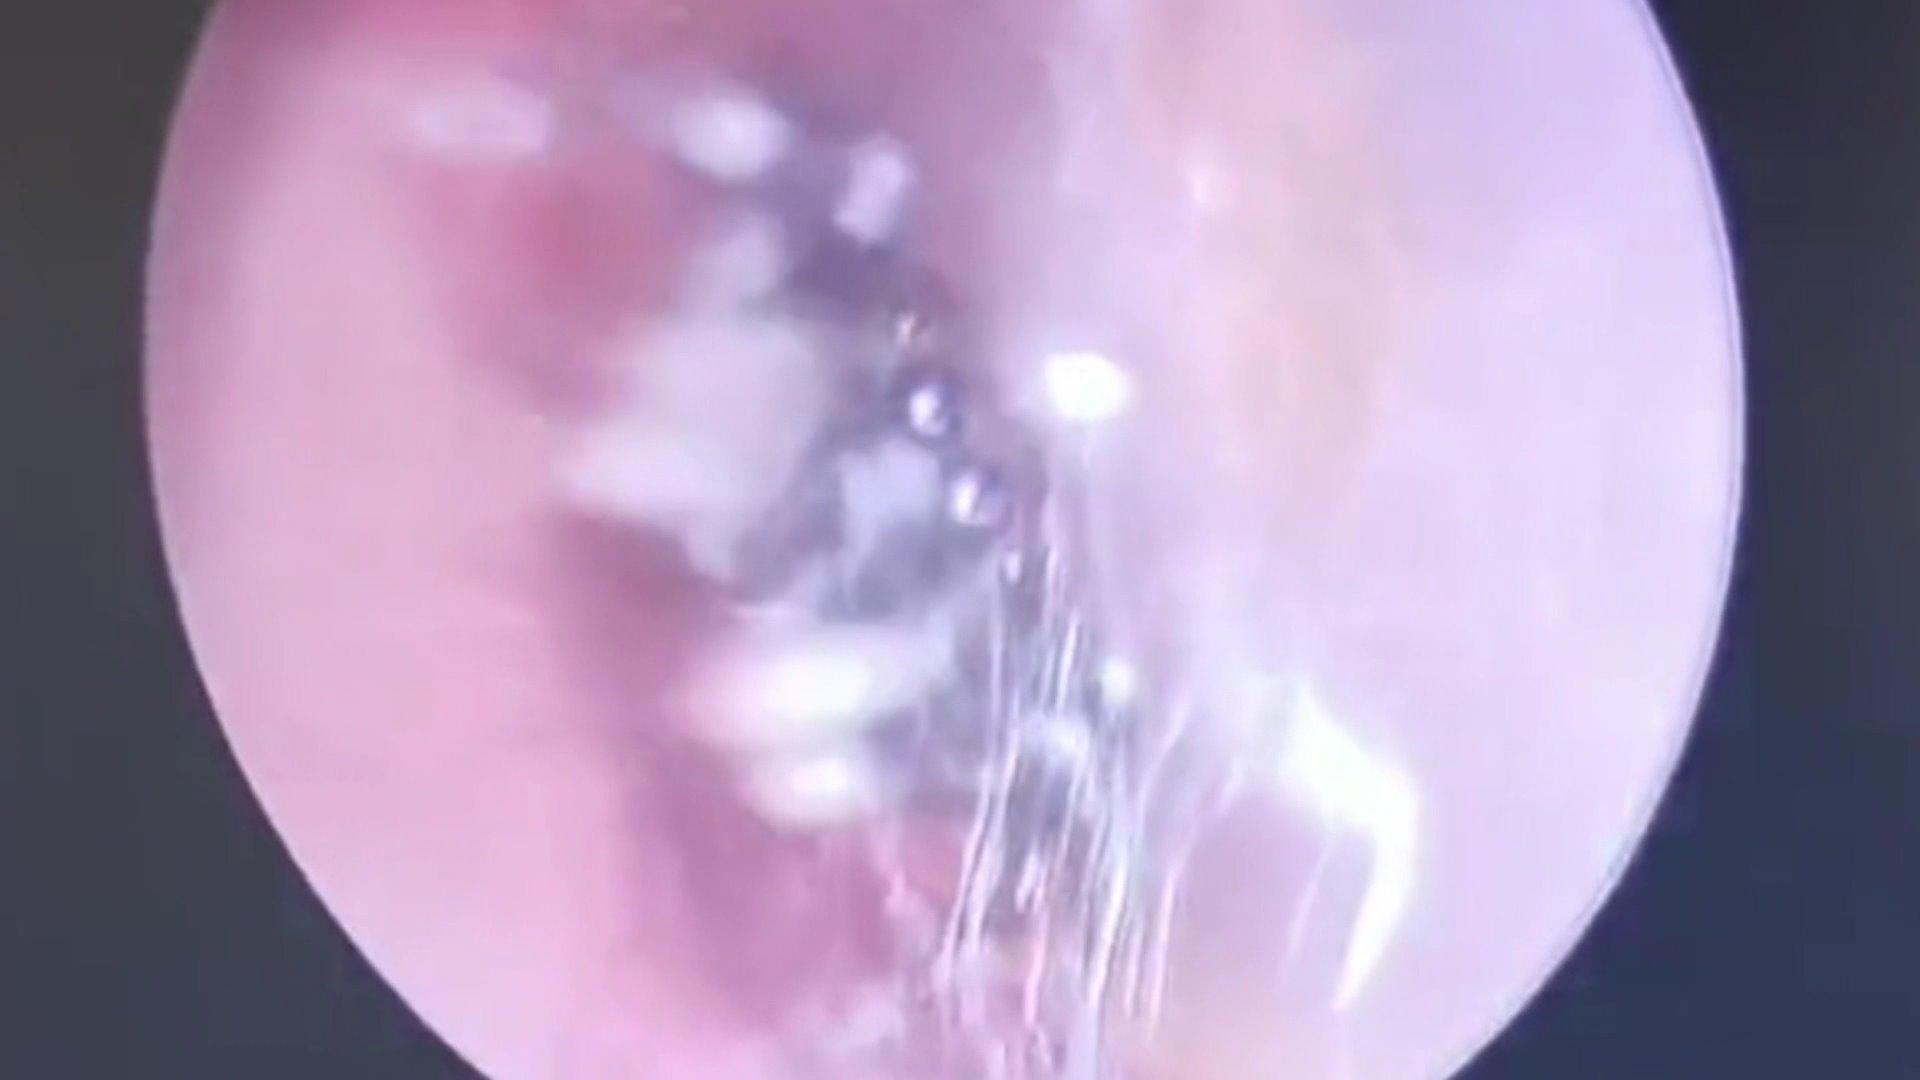 Ekel-Fund im Ohr: Arzt fischt Spinne aus Gehörgang! Wie kam die denn da hin?!